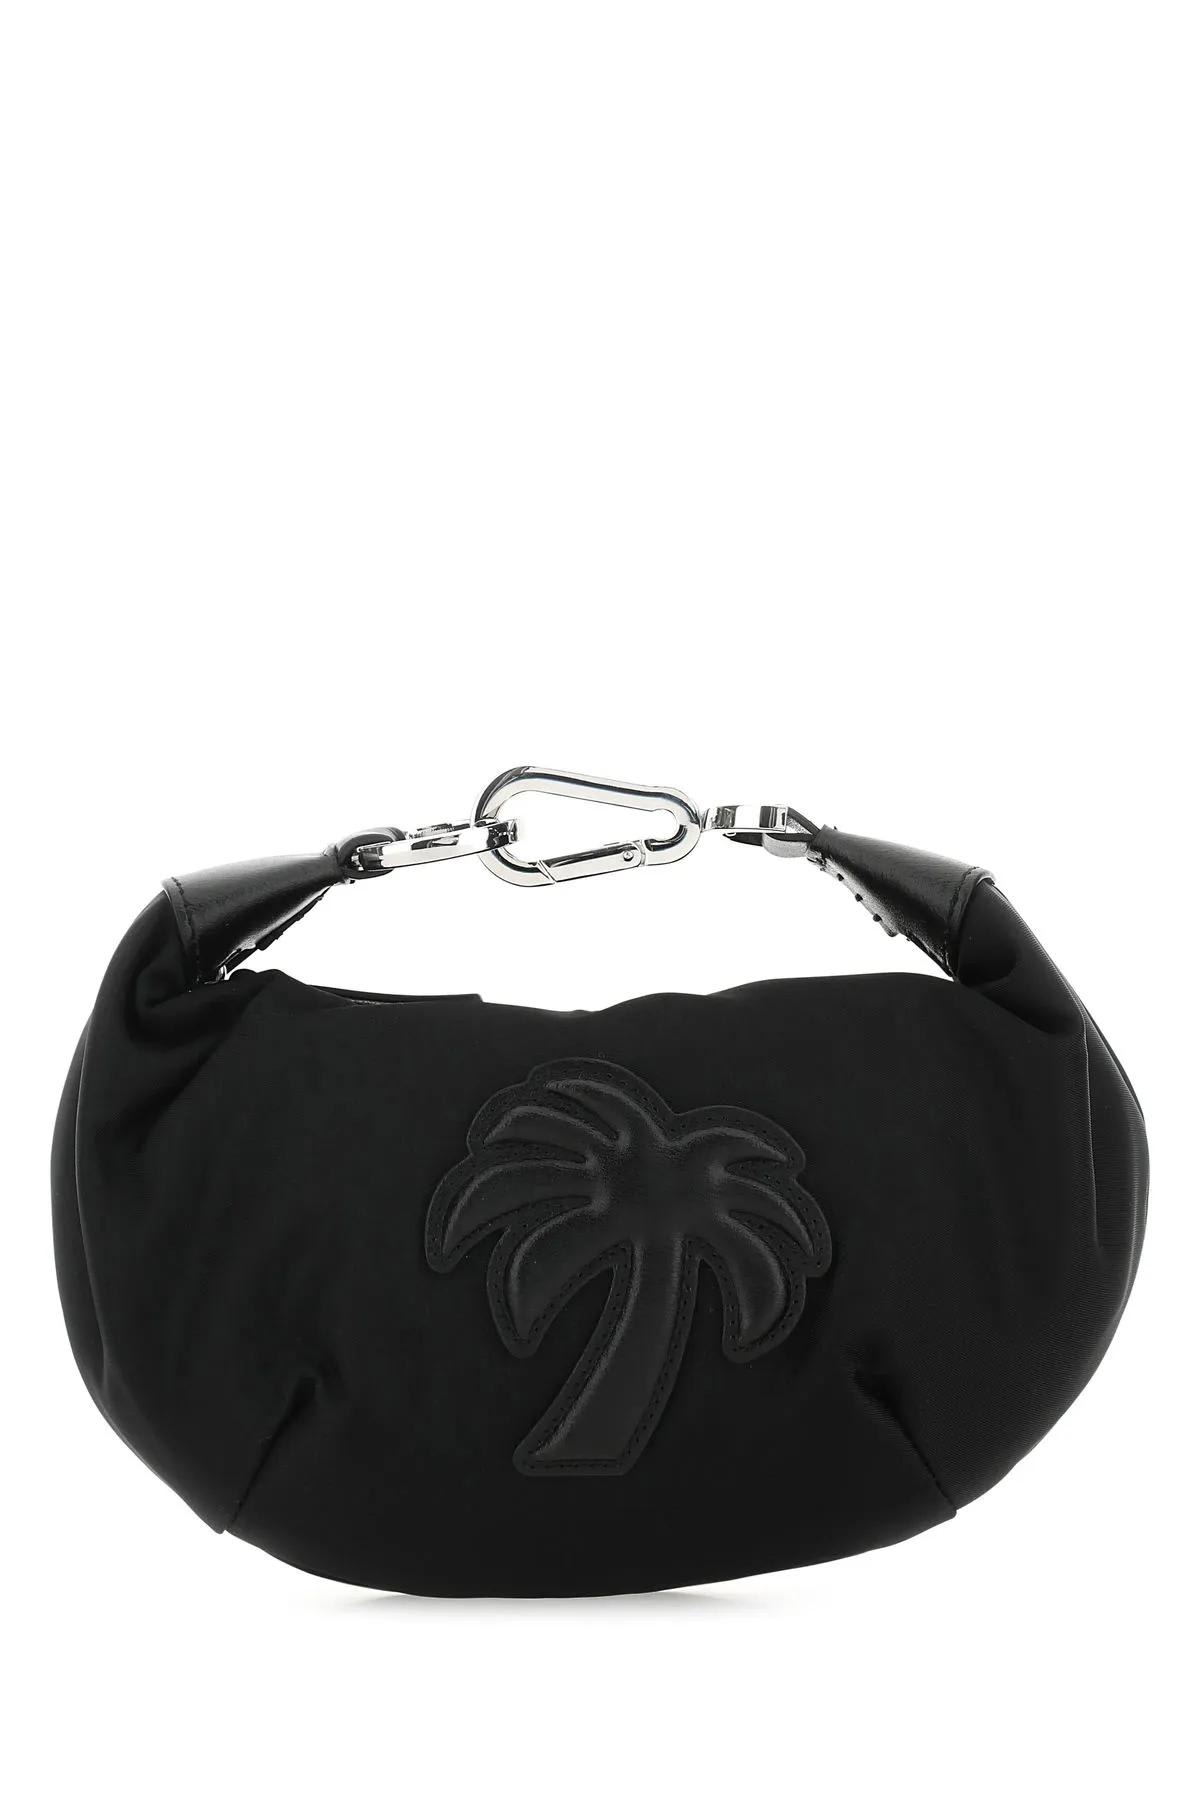 Palm Angels Black Fabric Big Palm Handbag